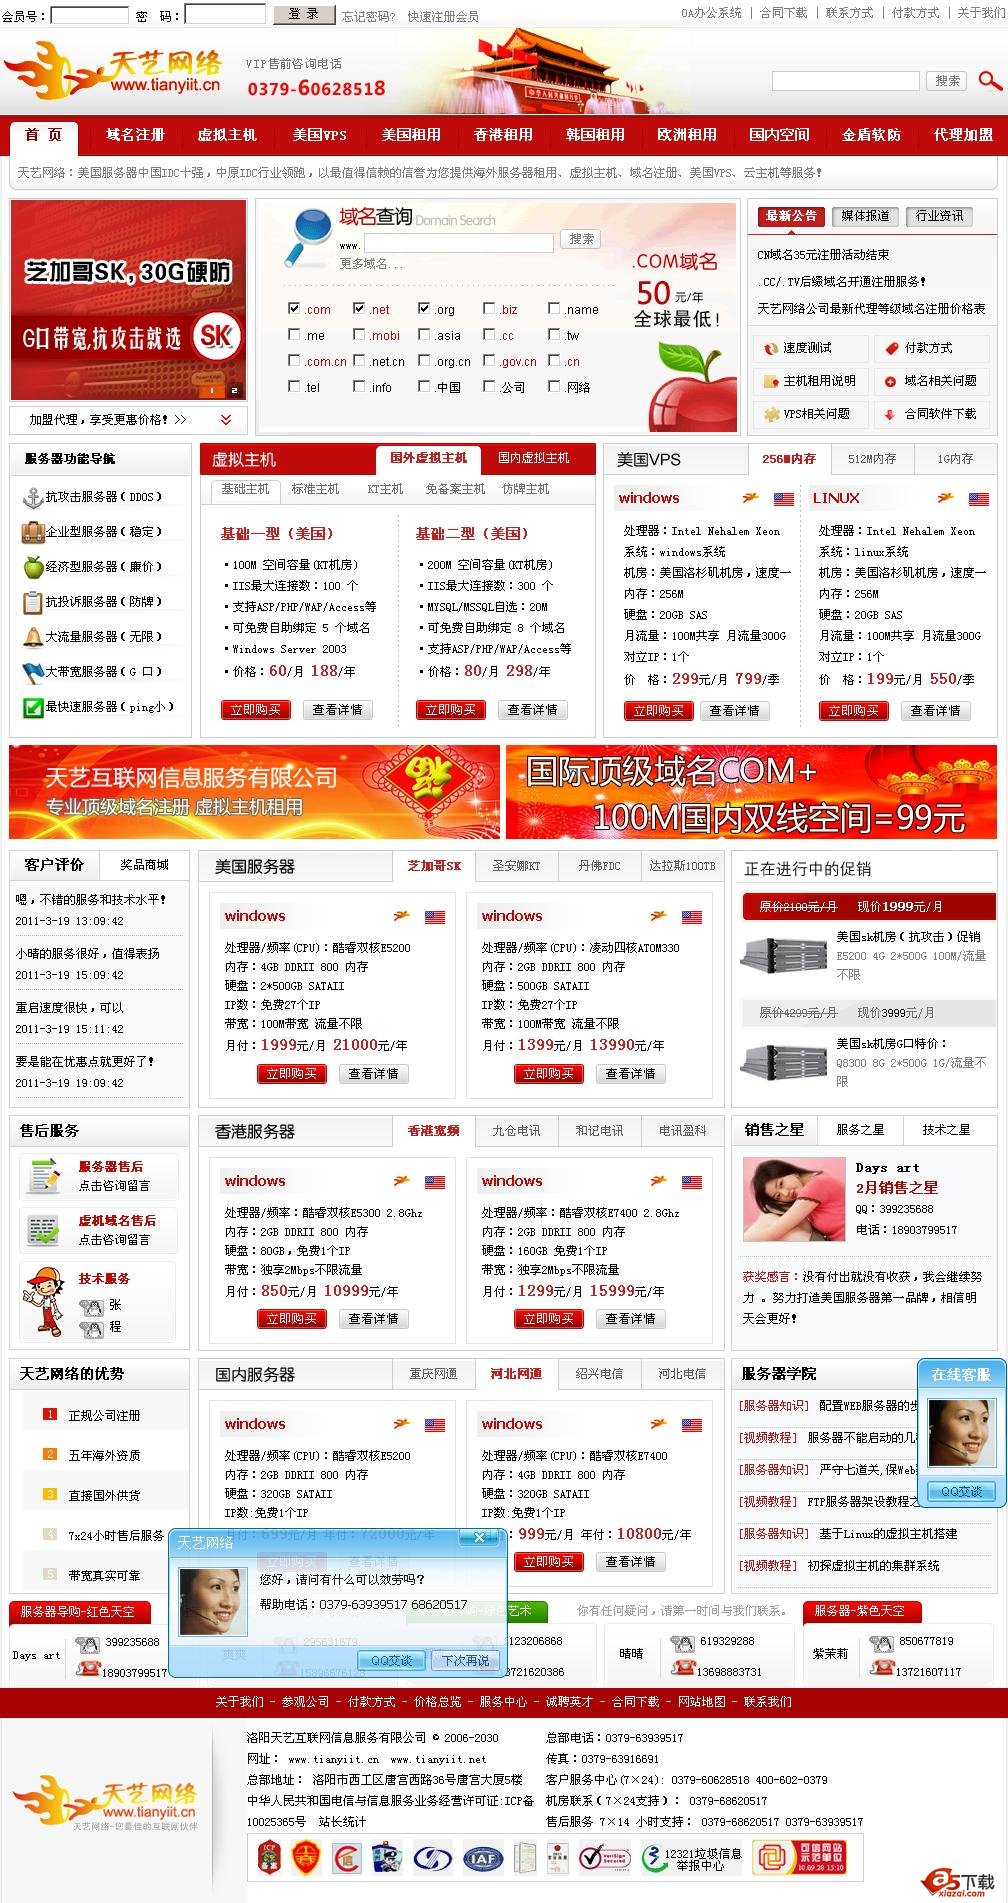 洛阳天艺网络公司ISP平台系统 V1.0